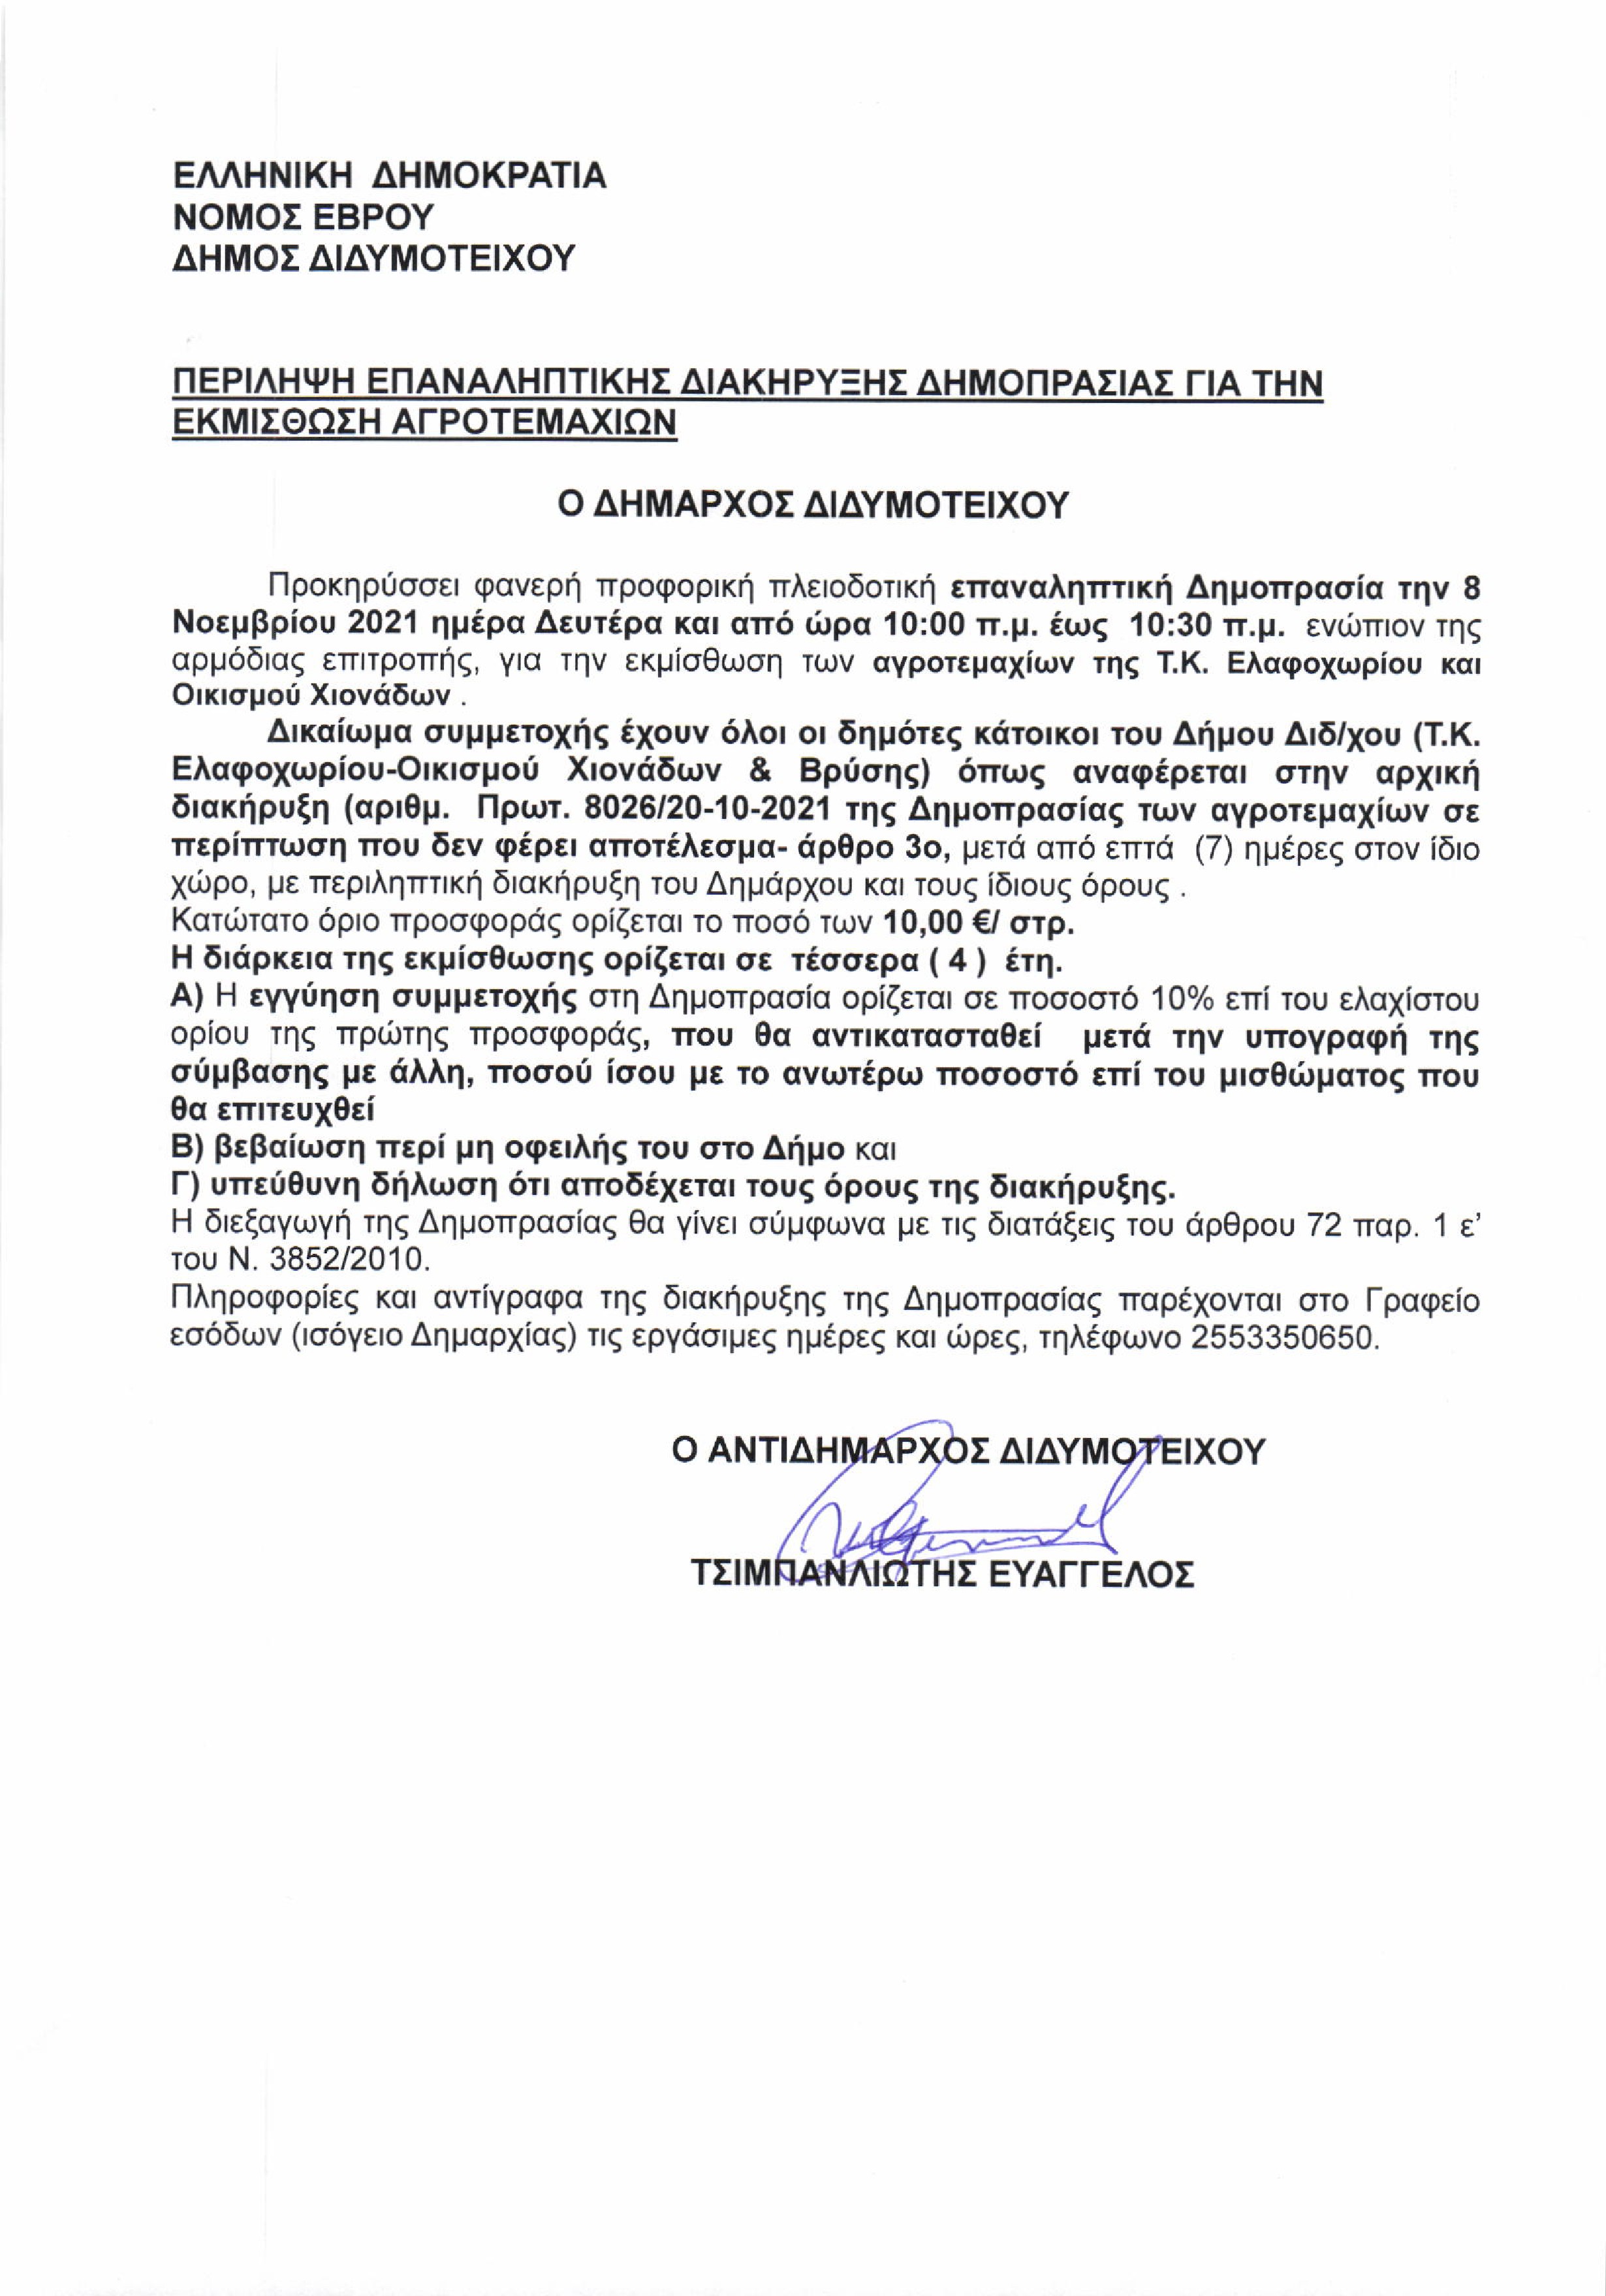 Επαναληπτική διακήρυξη δημοπρασίας για την εκμίσθωση δημοτικών εκτάσεων Ελαφοχωρίου & οικισμού Χιονάδων